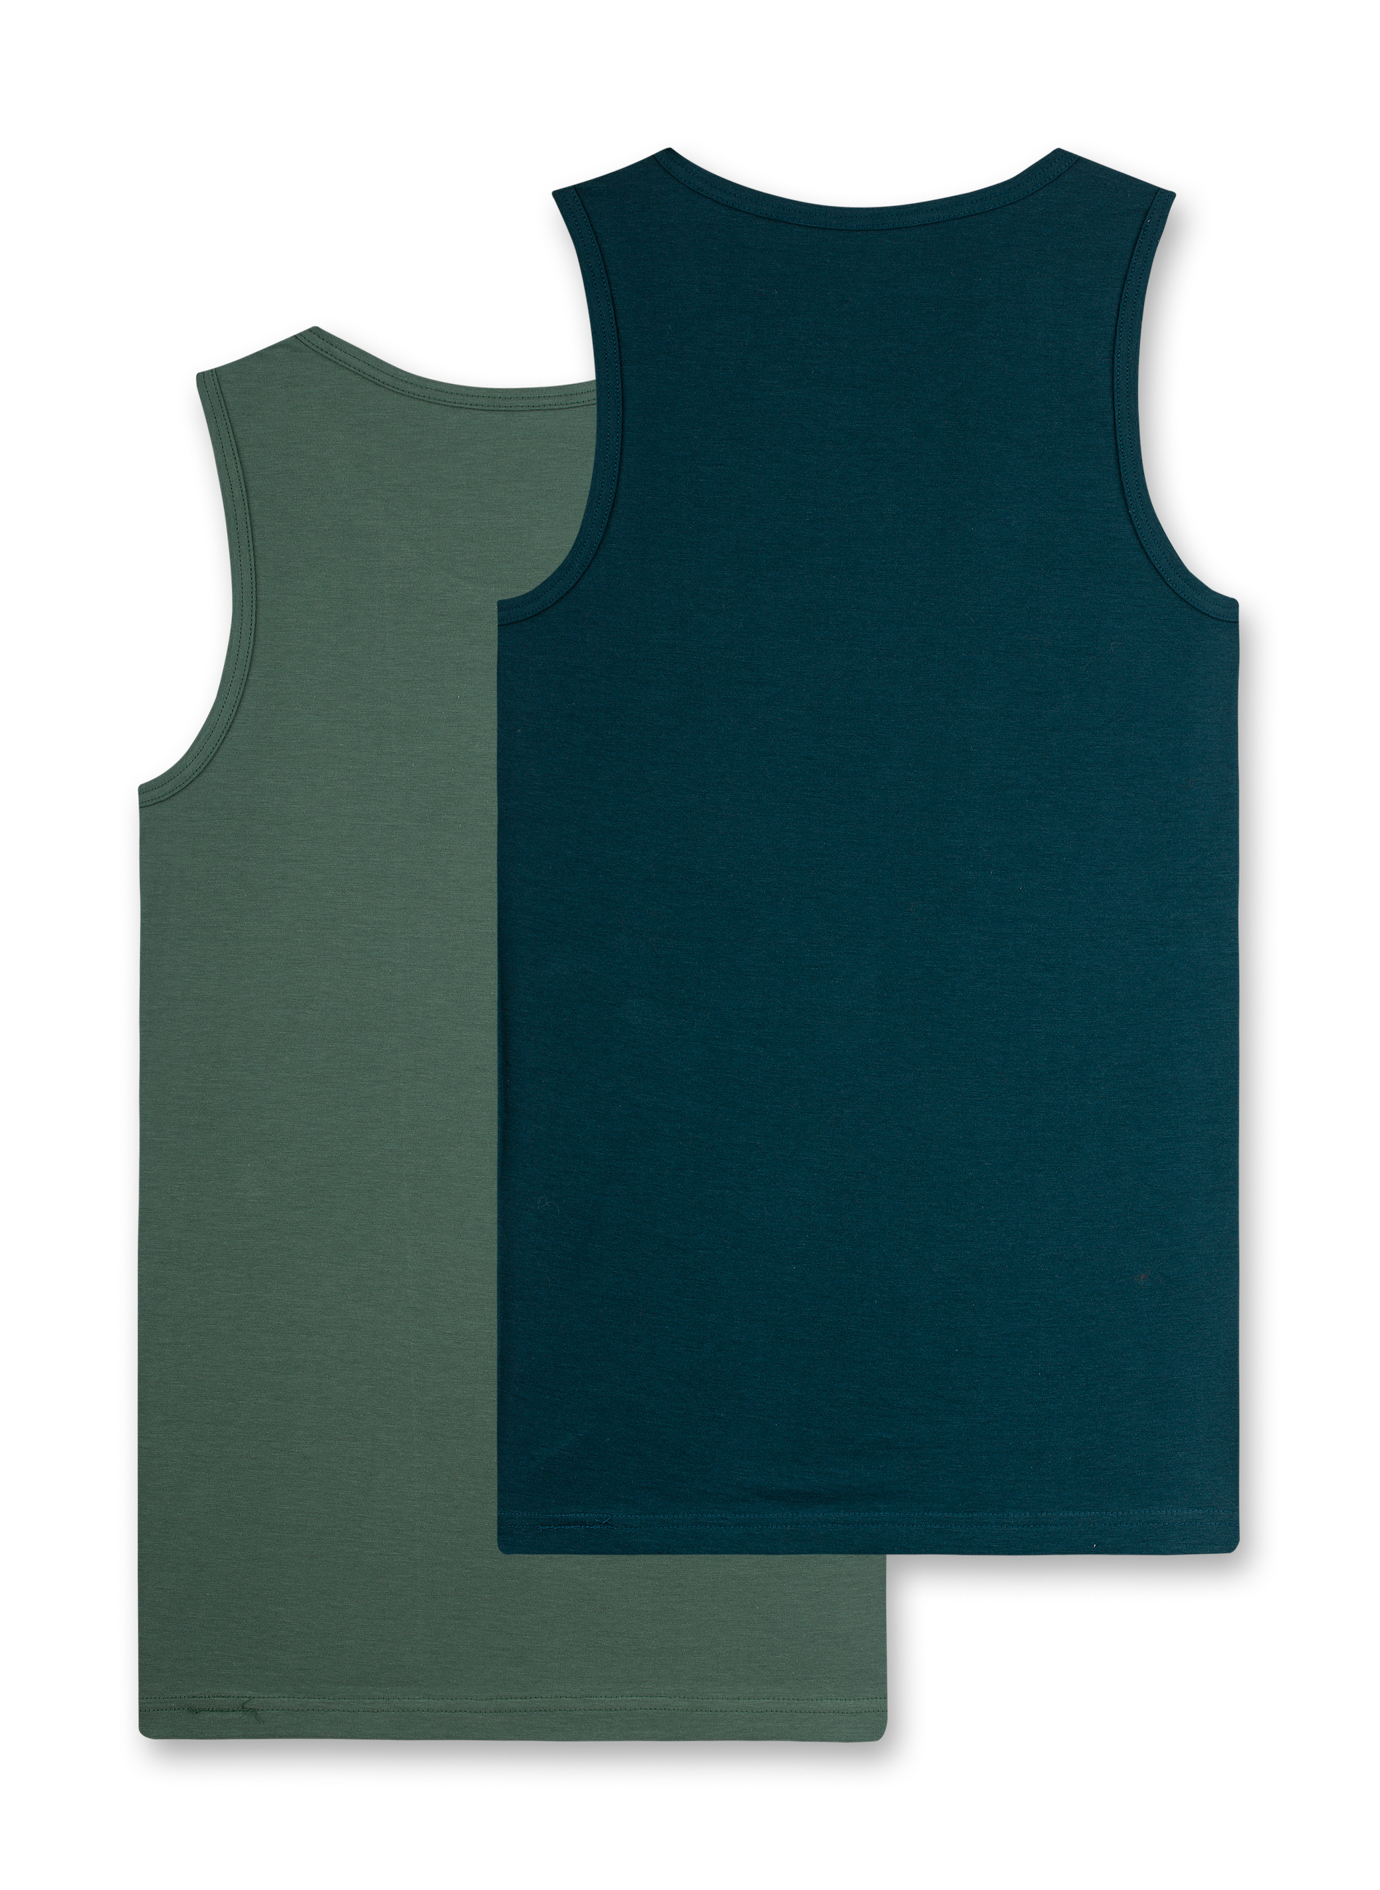 Jungen-Unterhemd (Doppelpack) Dunkelblau und Grün